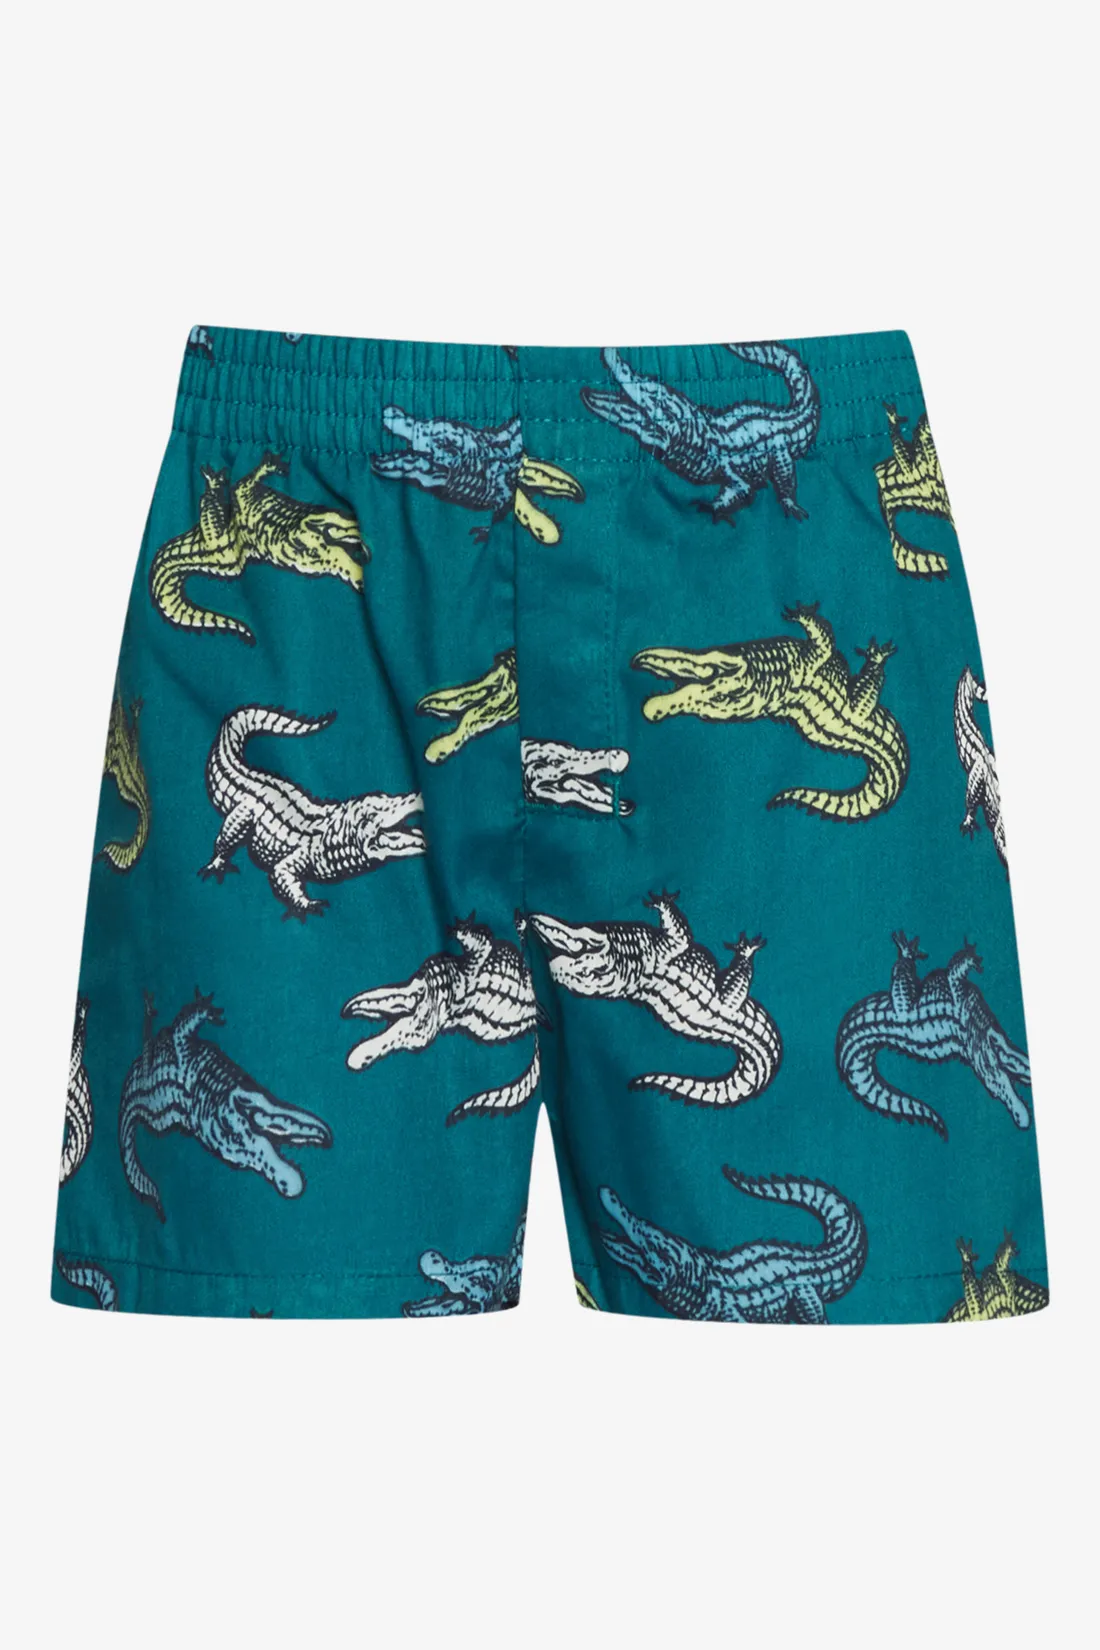 3 Pack crocodile boxers green - BOYS 2-8 YEARS Underwear & Socks ...